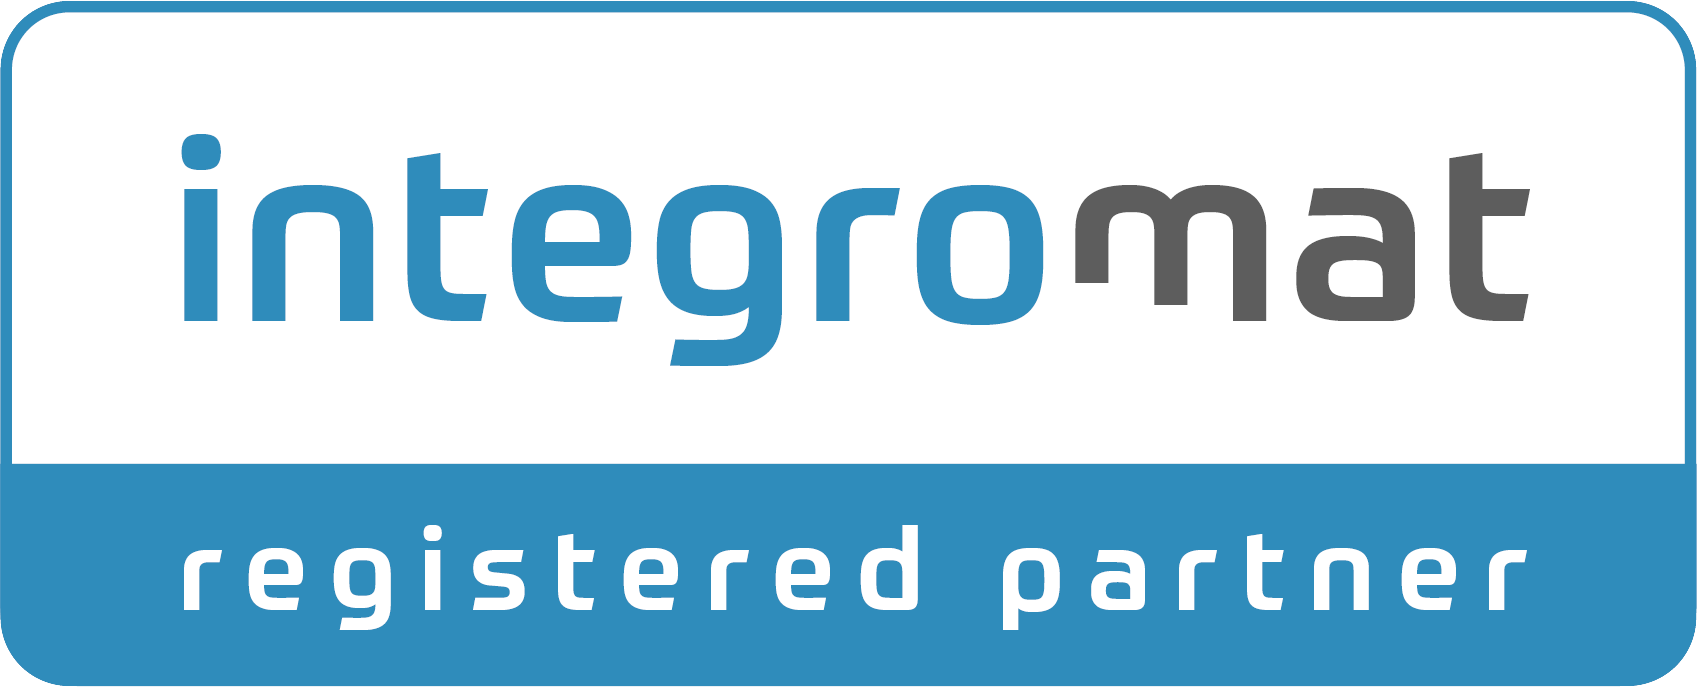 integromat registered partner logo | Ventura Consulting - Cristian Ventura